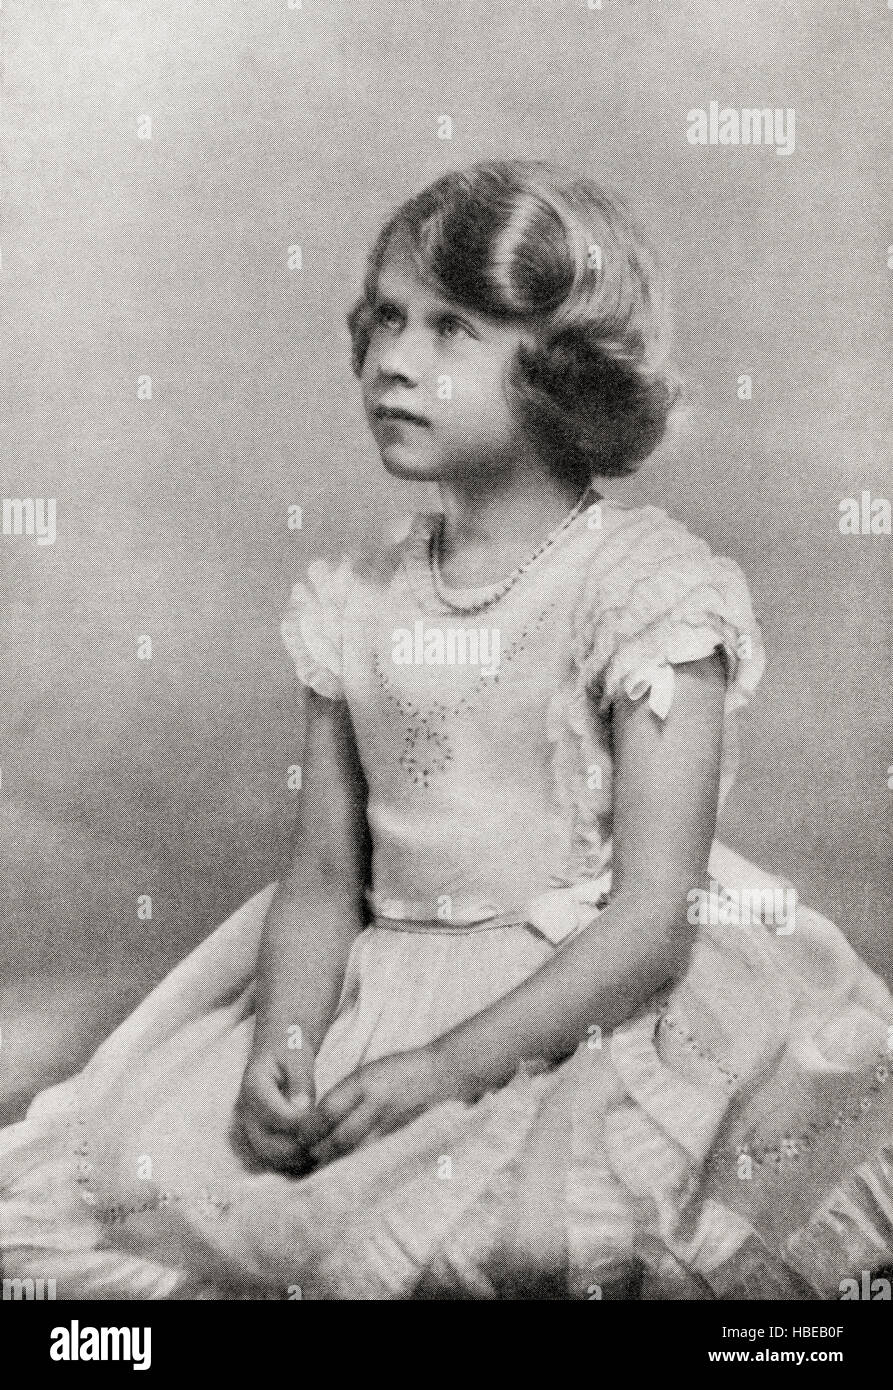 Prinzessin Elizabeth, zukünftige Königin Elizabeth II., hier im Alter von 6 Jahren gesehen. Elizabeth II, 1926 - 2022. Königin des Vereinigten Königreichs, Kanada, Australien und Neuseeland. Aus ihren liebenswürdigen Majestäten King George VI und Queen Elizabeth, veröffentlicht 1937. Stockfoto